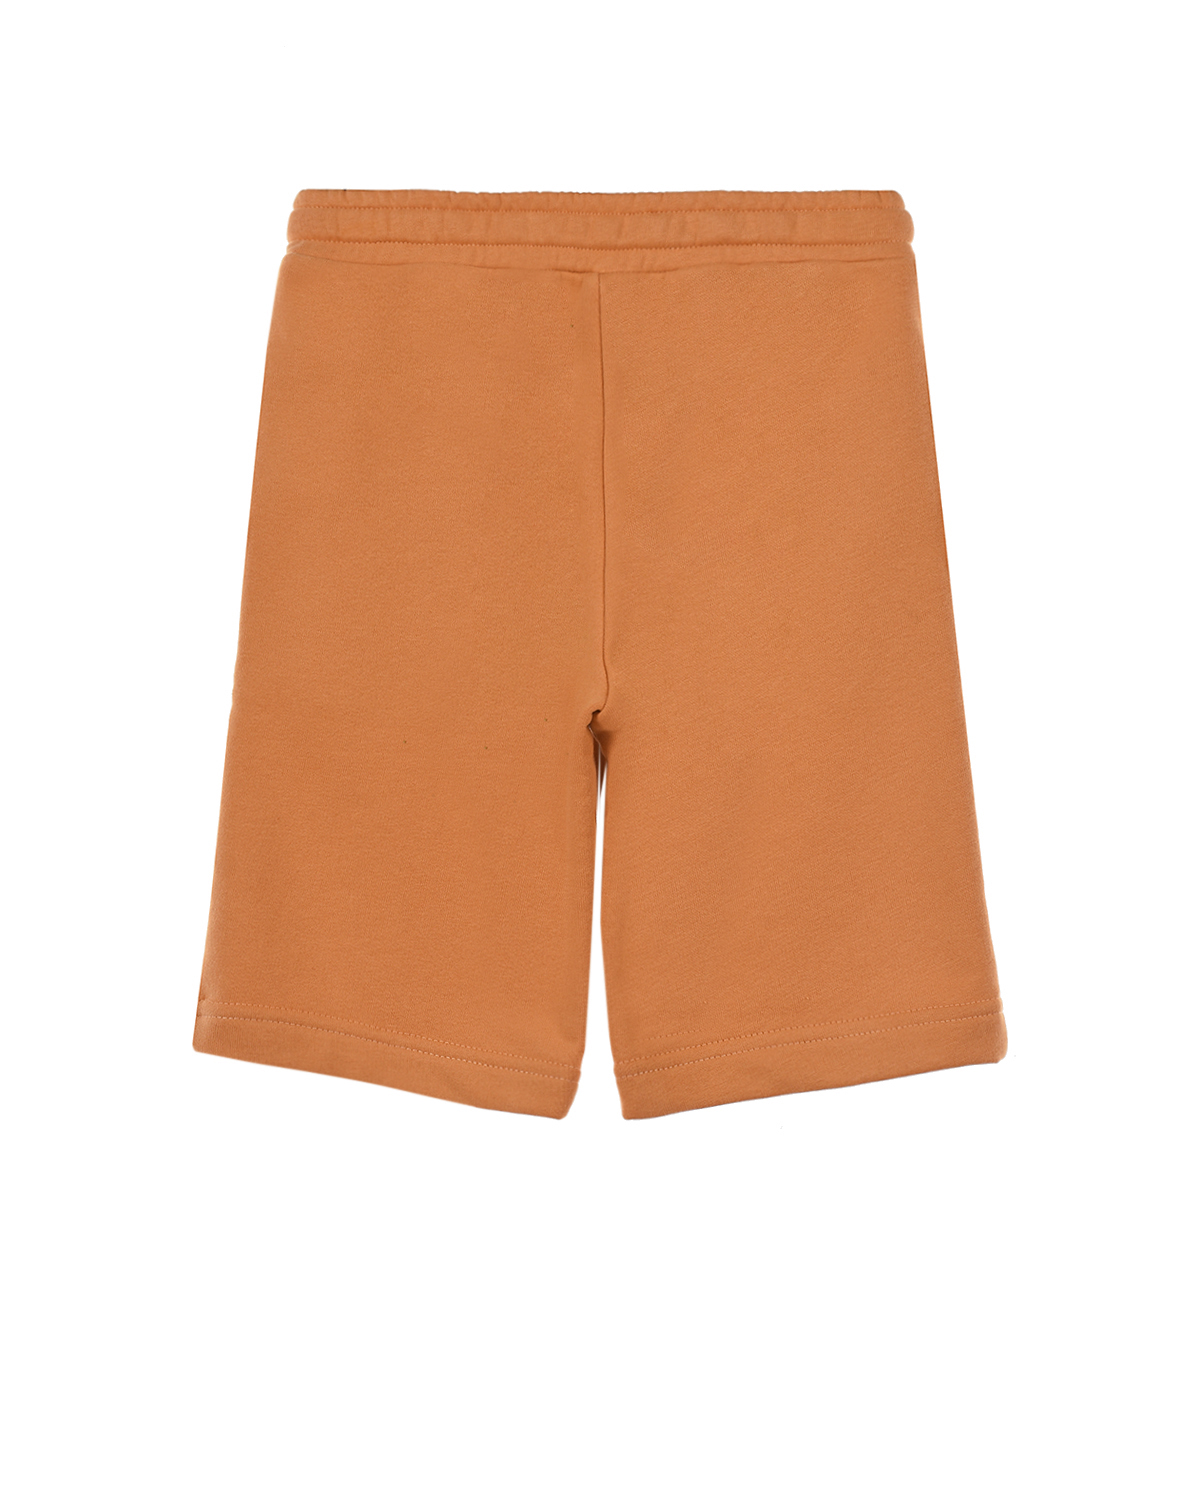 Оранжевые шорты из футера Dan Maralex детские, размер 104, цвет оранжевый - фото 2